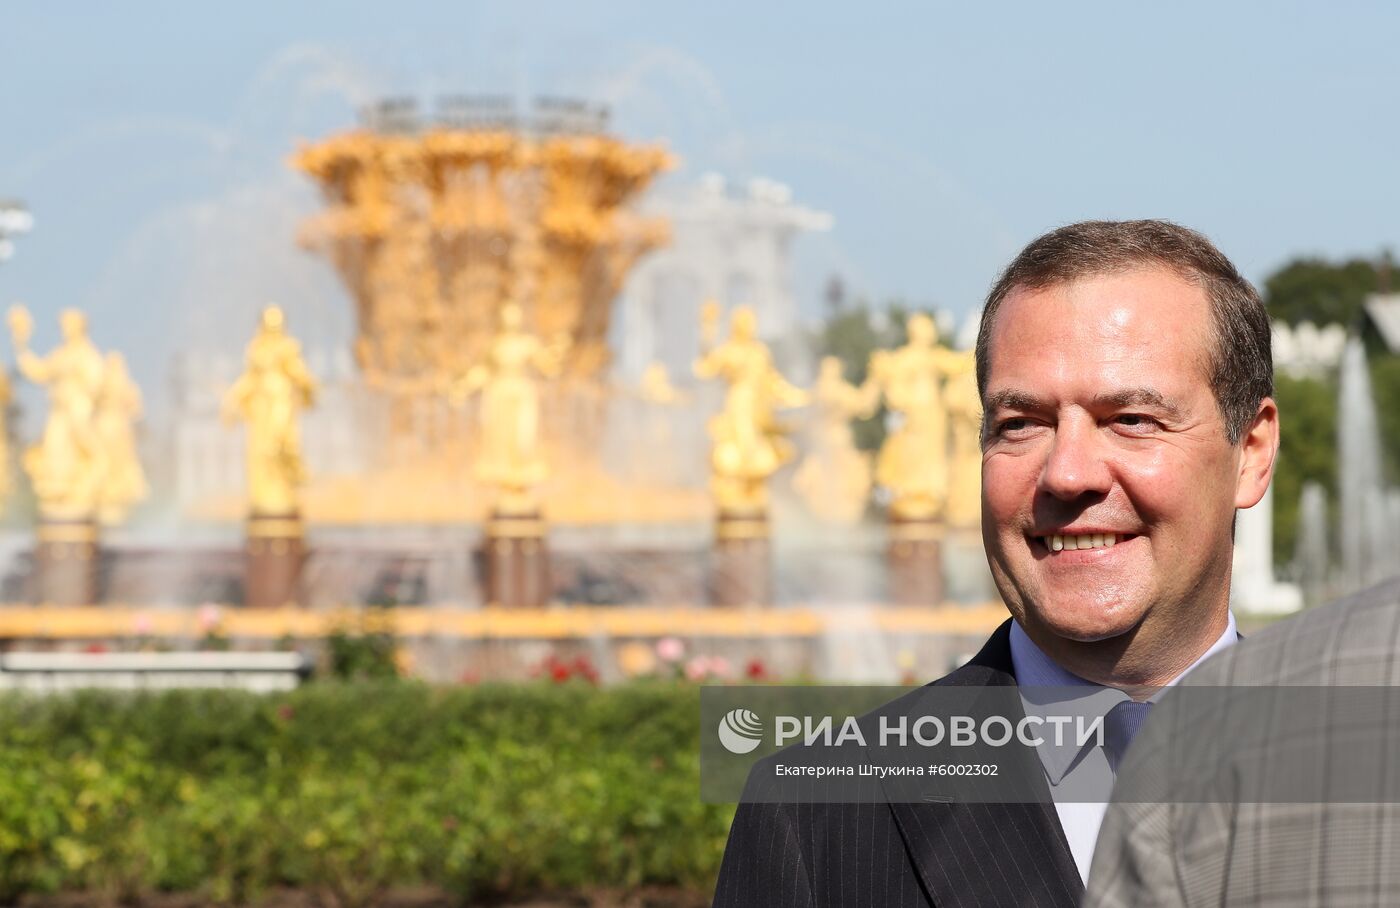 Президент РФ В. Путин и  премьер-министр РФ Д. Медведев приняли участие в торжествах по случаю Дня города Москвы